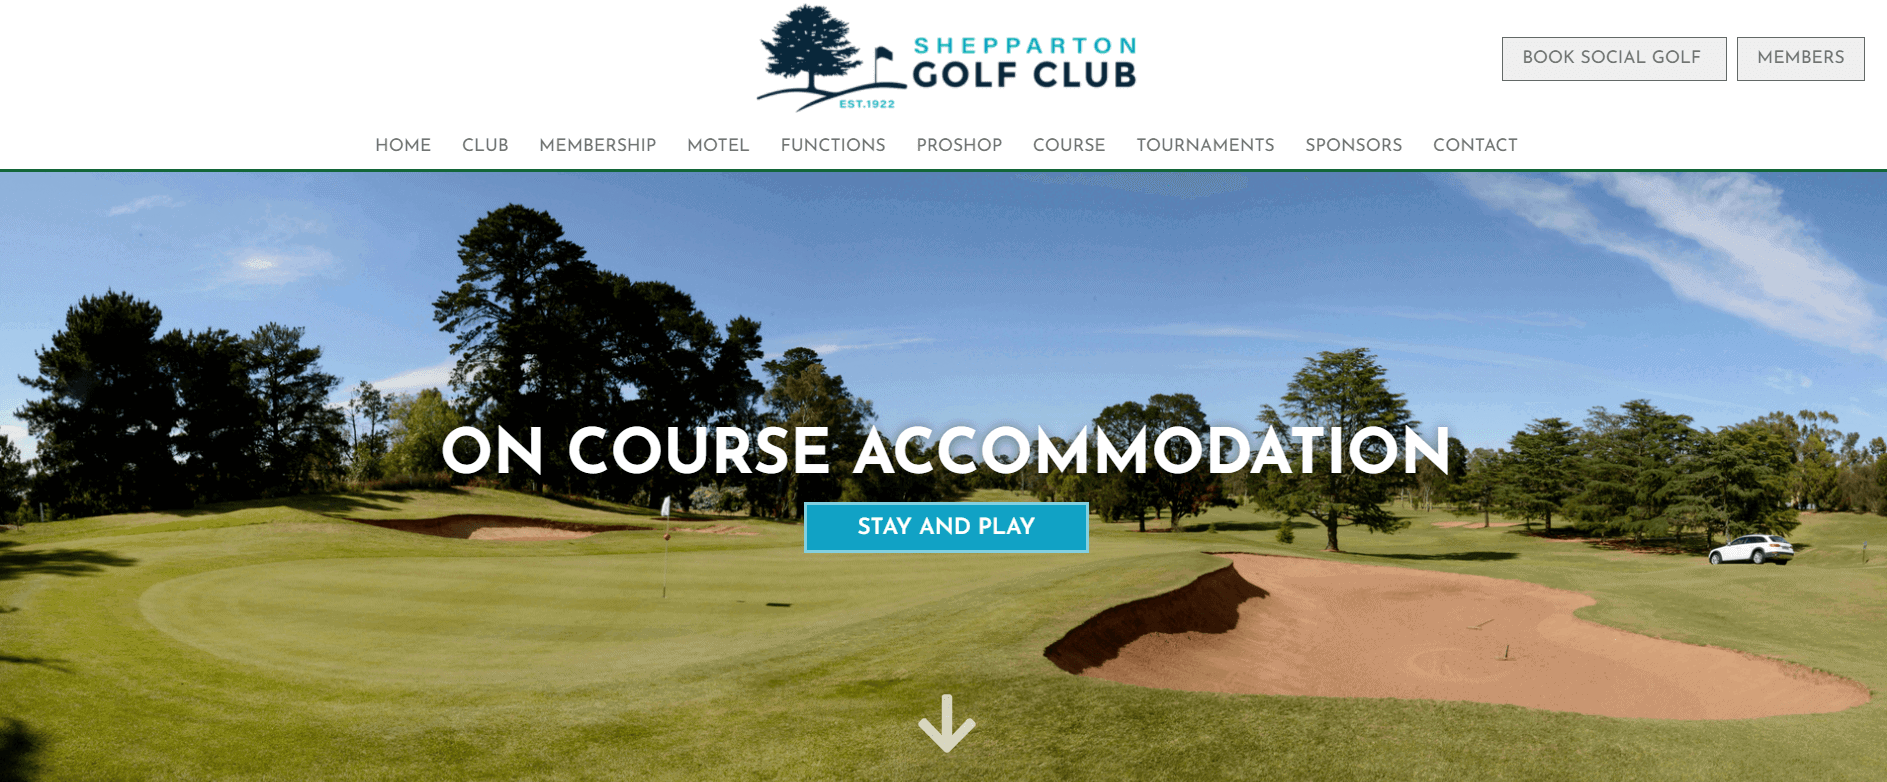 shepparton golf club